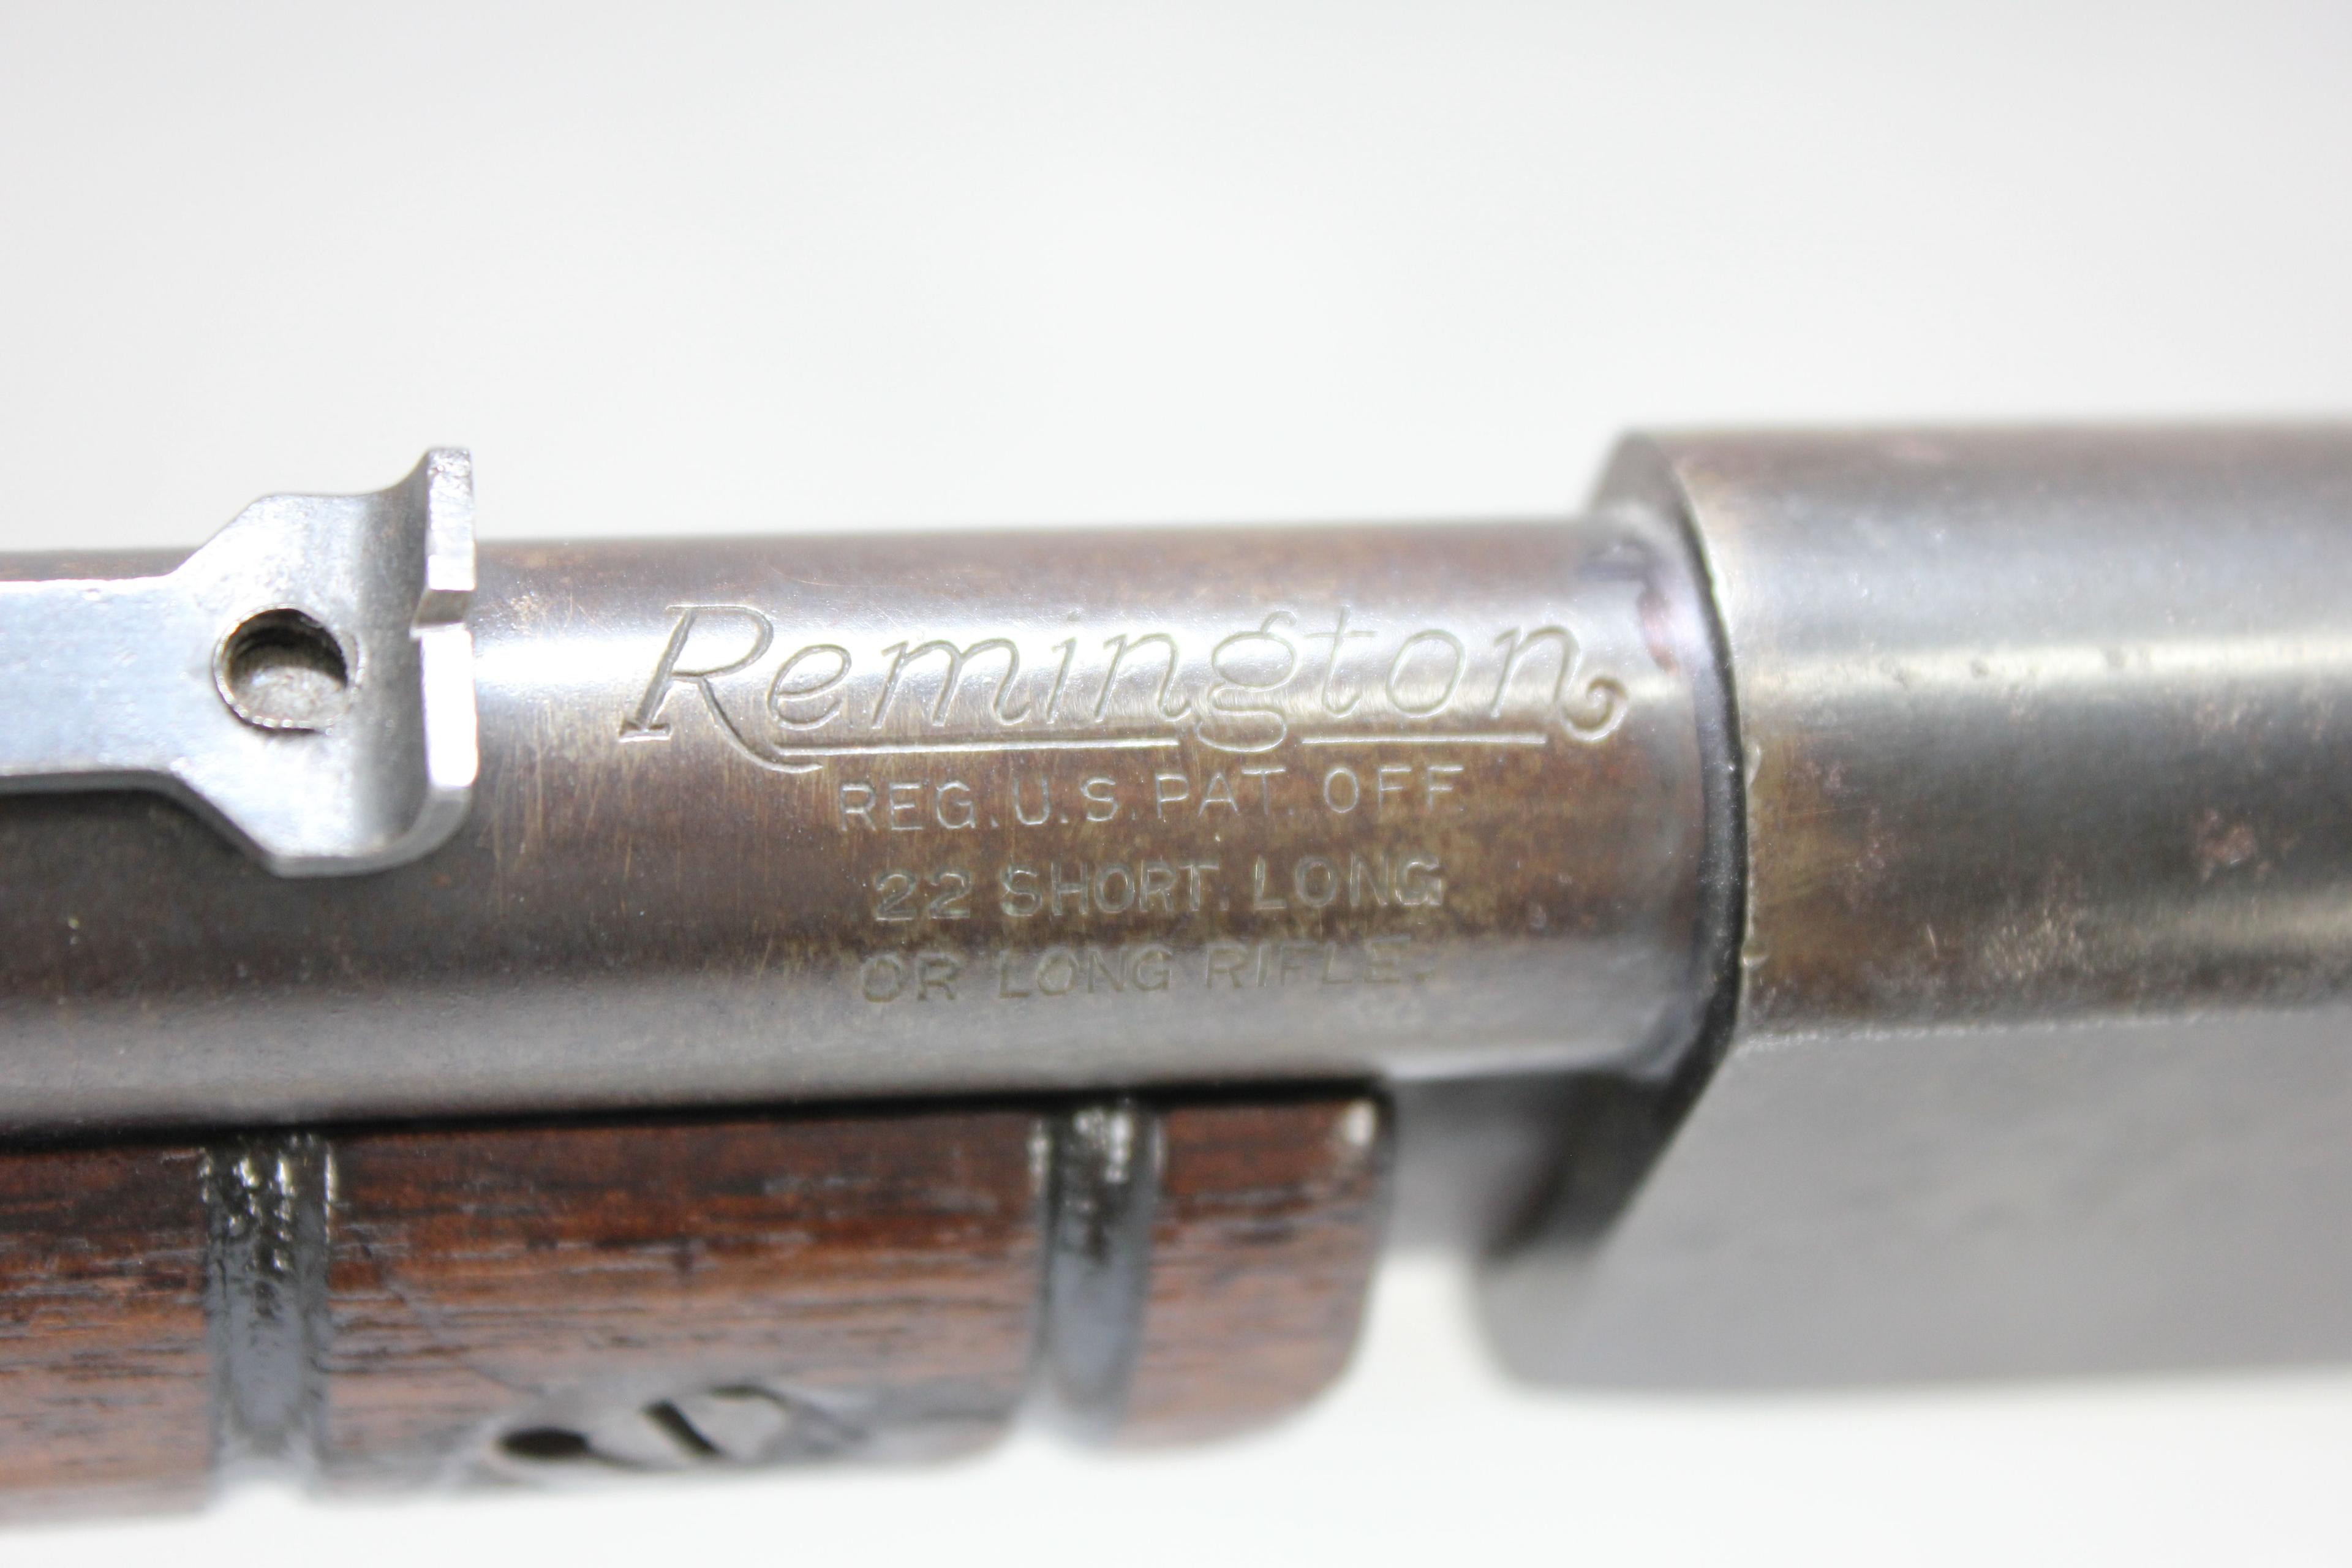 Remington Model 12 .22 S/L/LR Take Down Tube Fed Pump Action Rifle; SN 790975